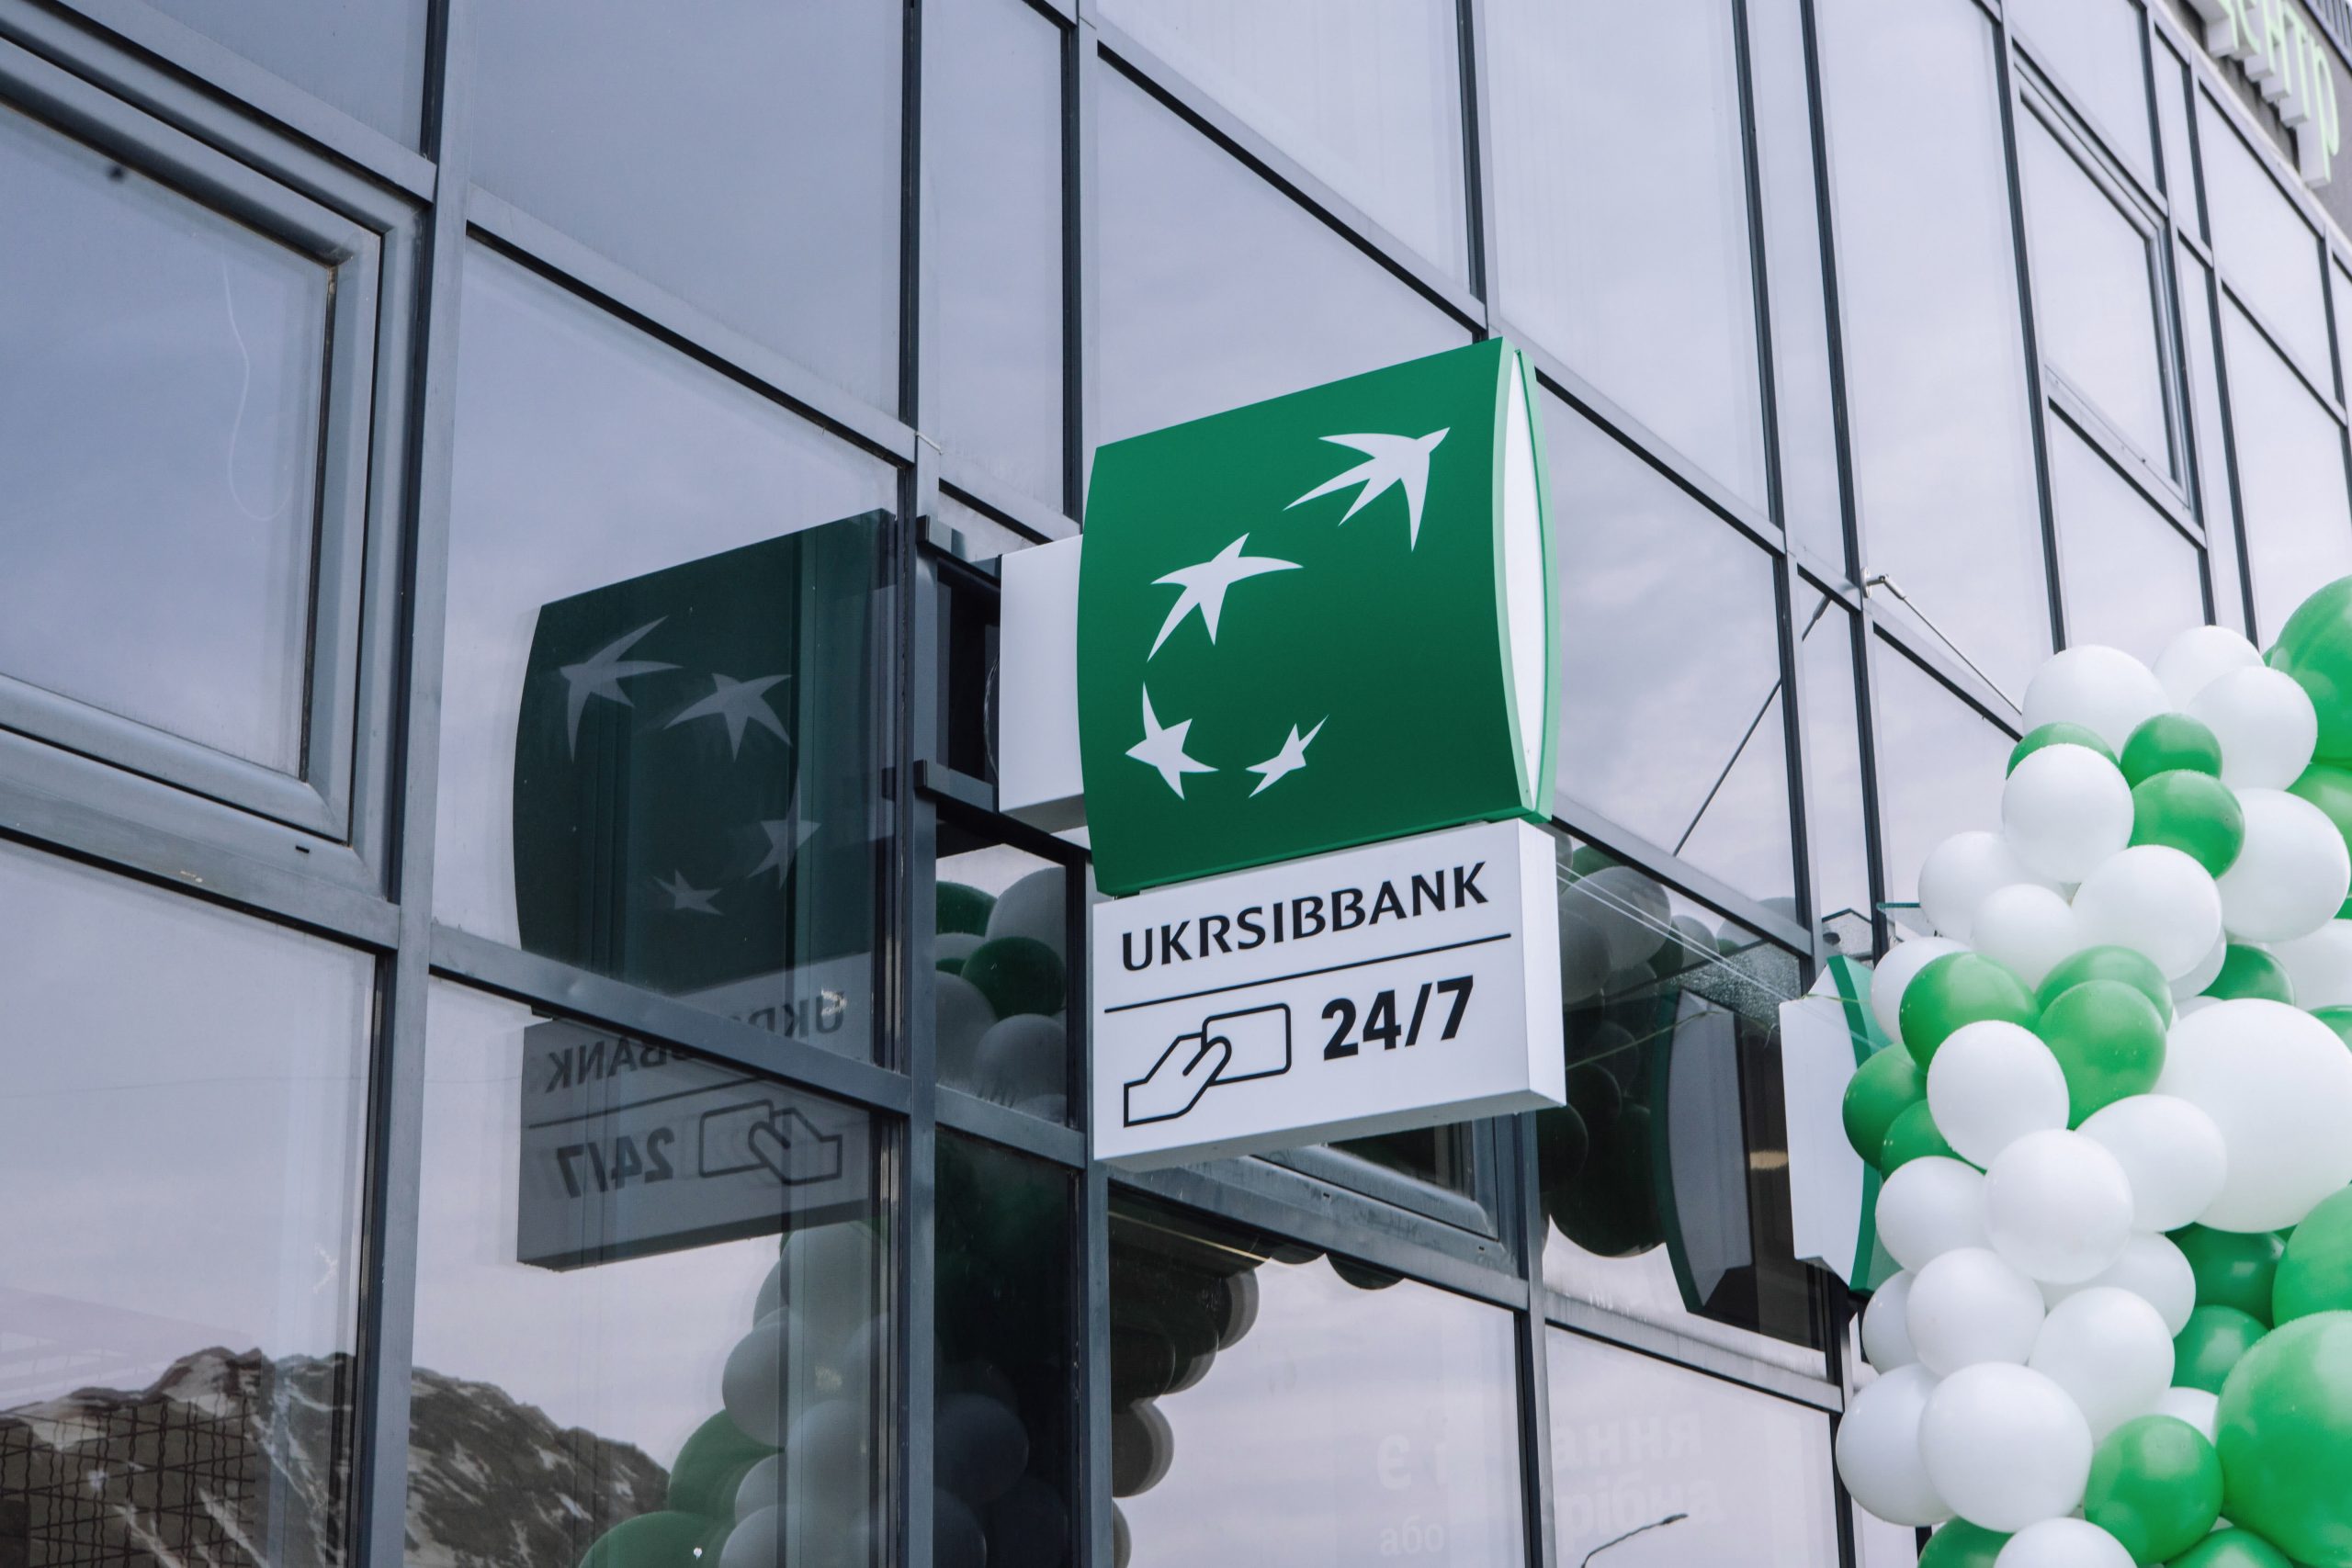 UKRSIBBANK відкрив у Бучі нове відділення